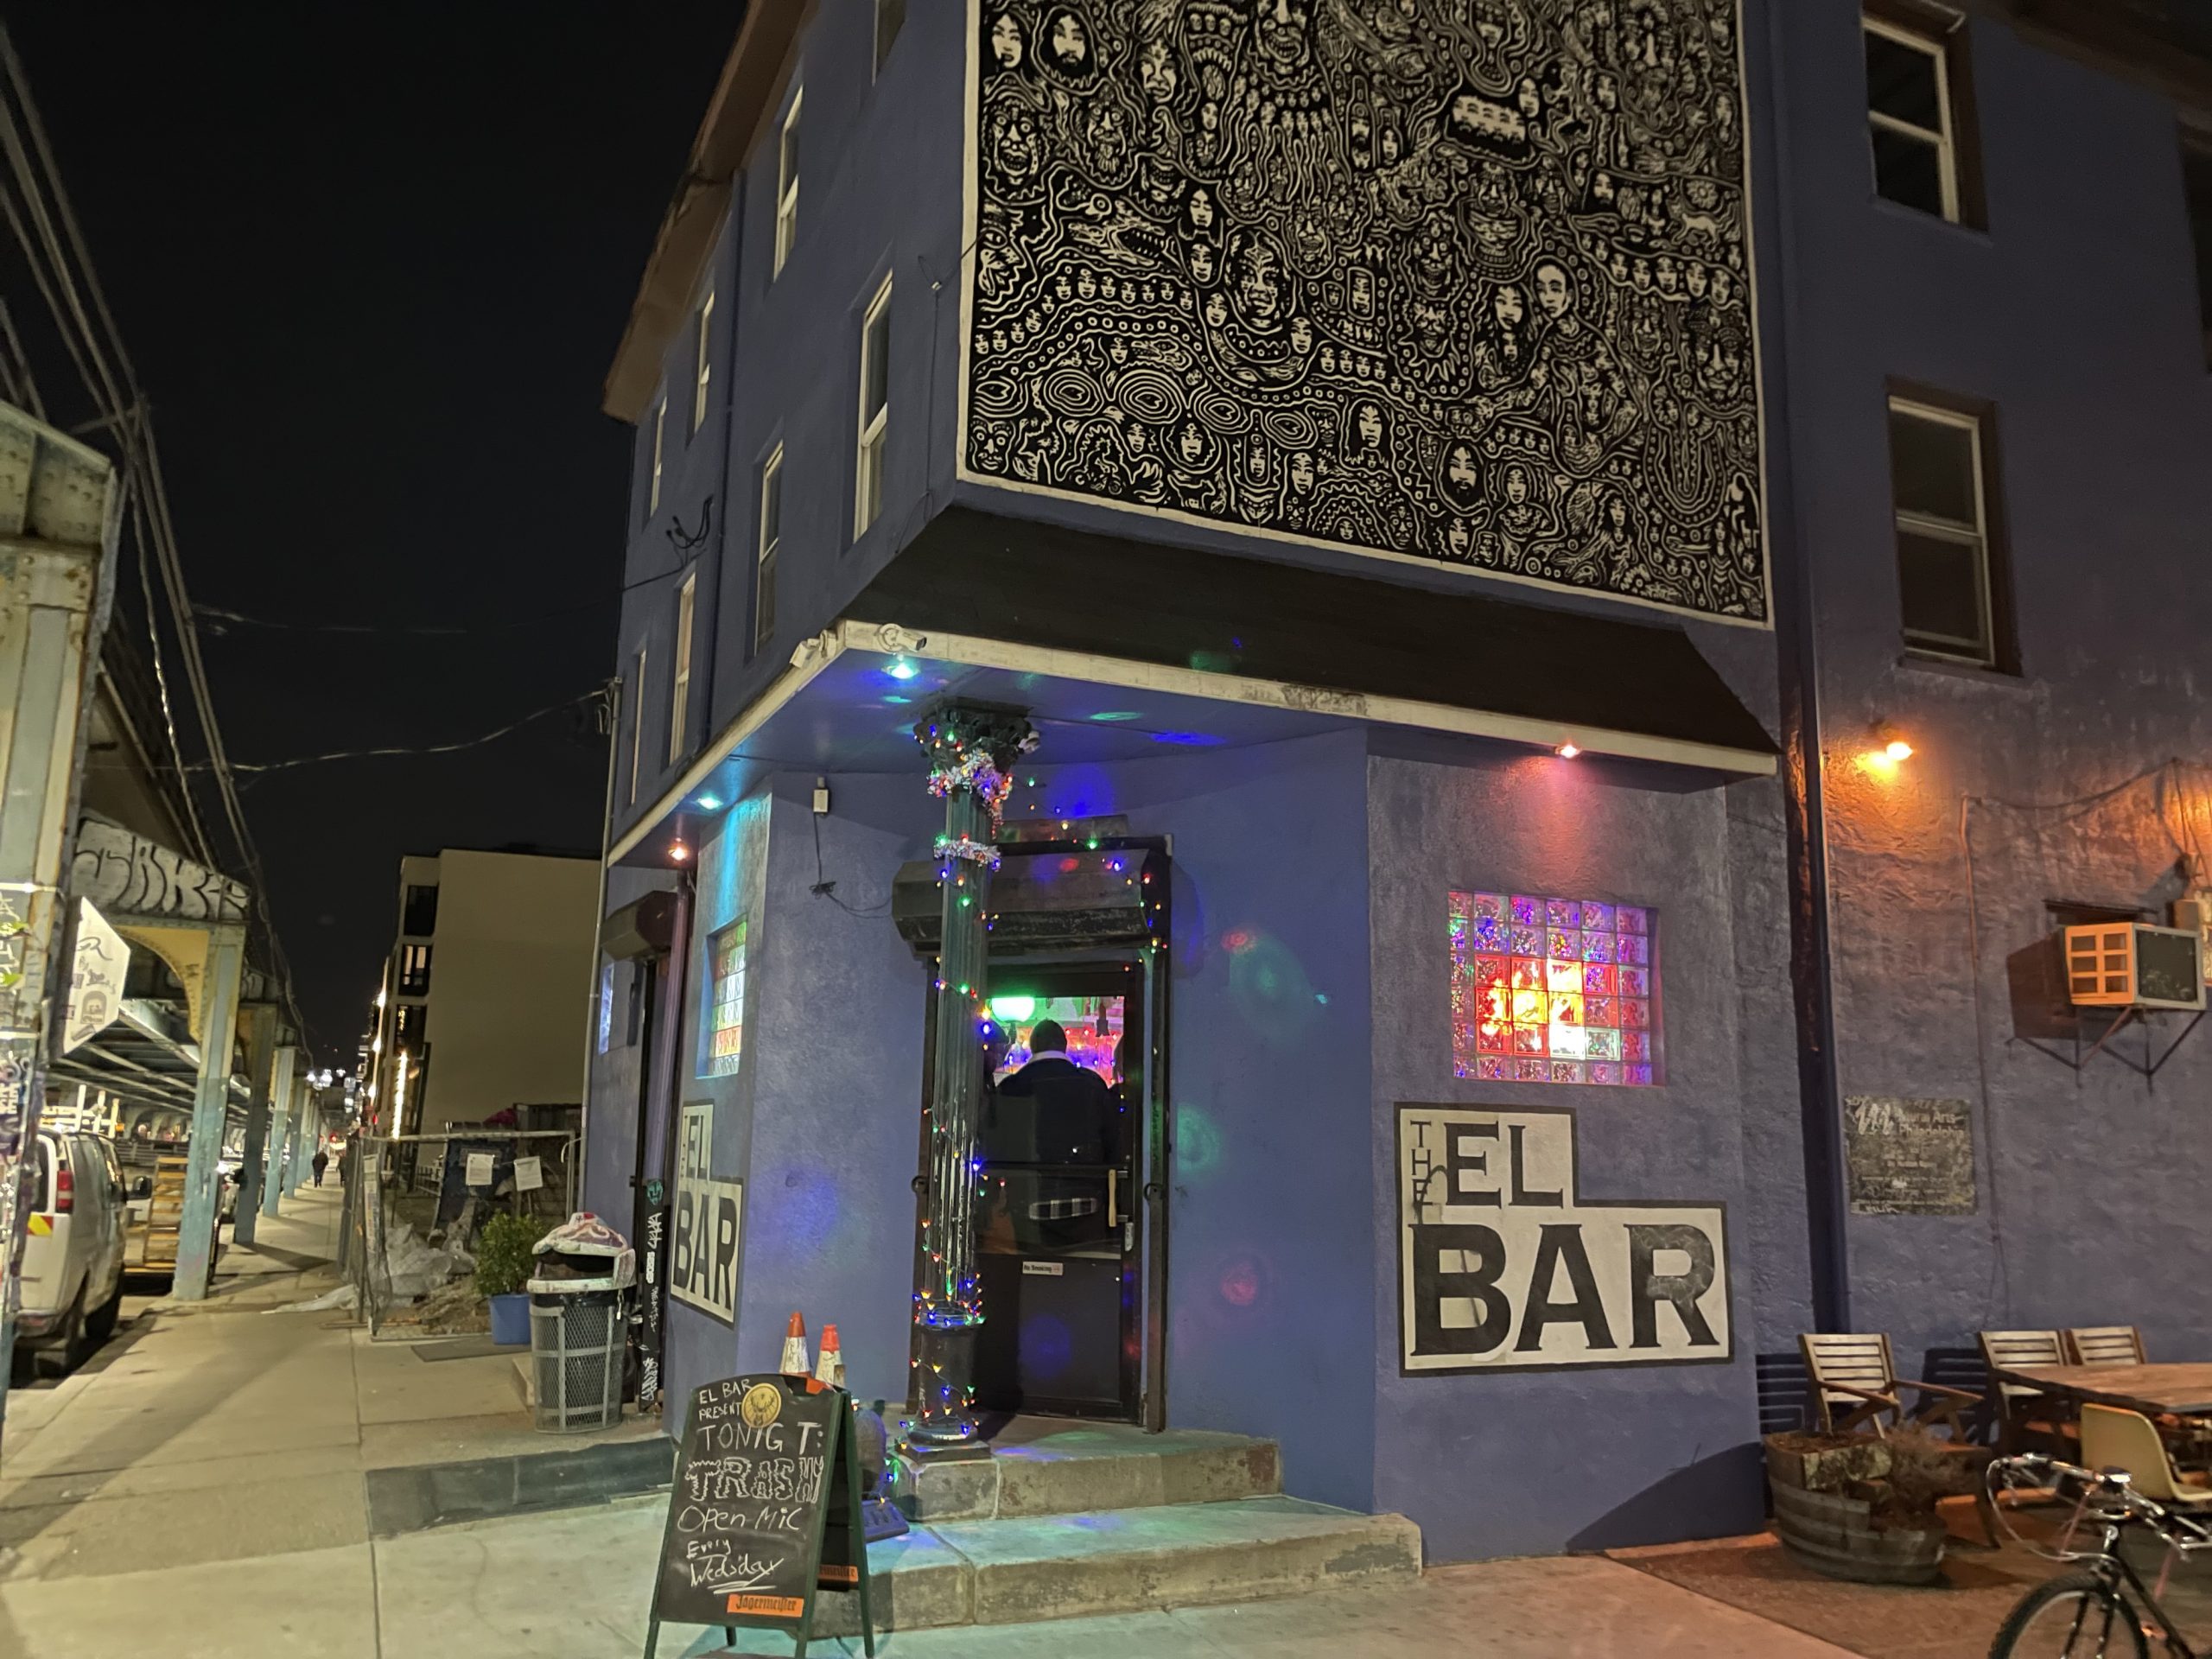 El Bar - Philadelphia Dive Bar - Outside